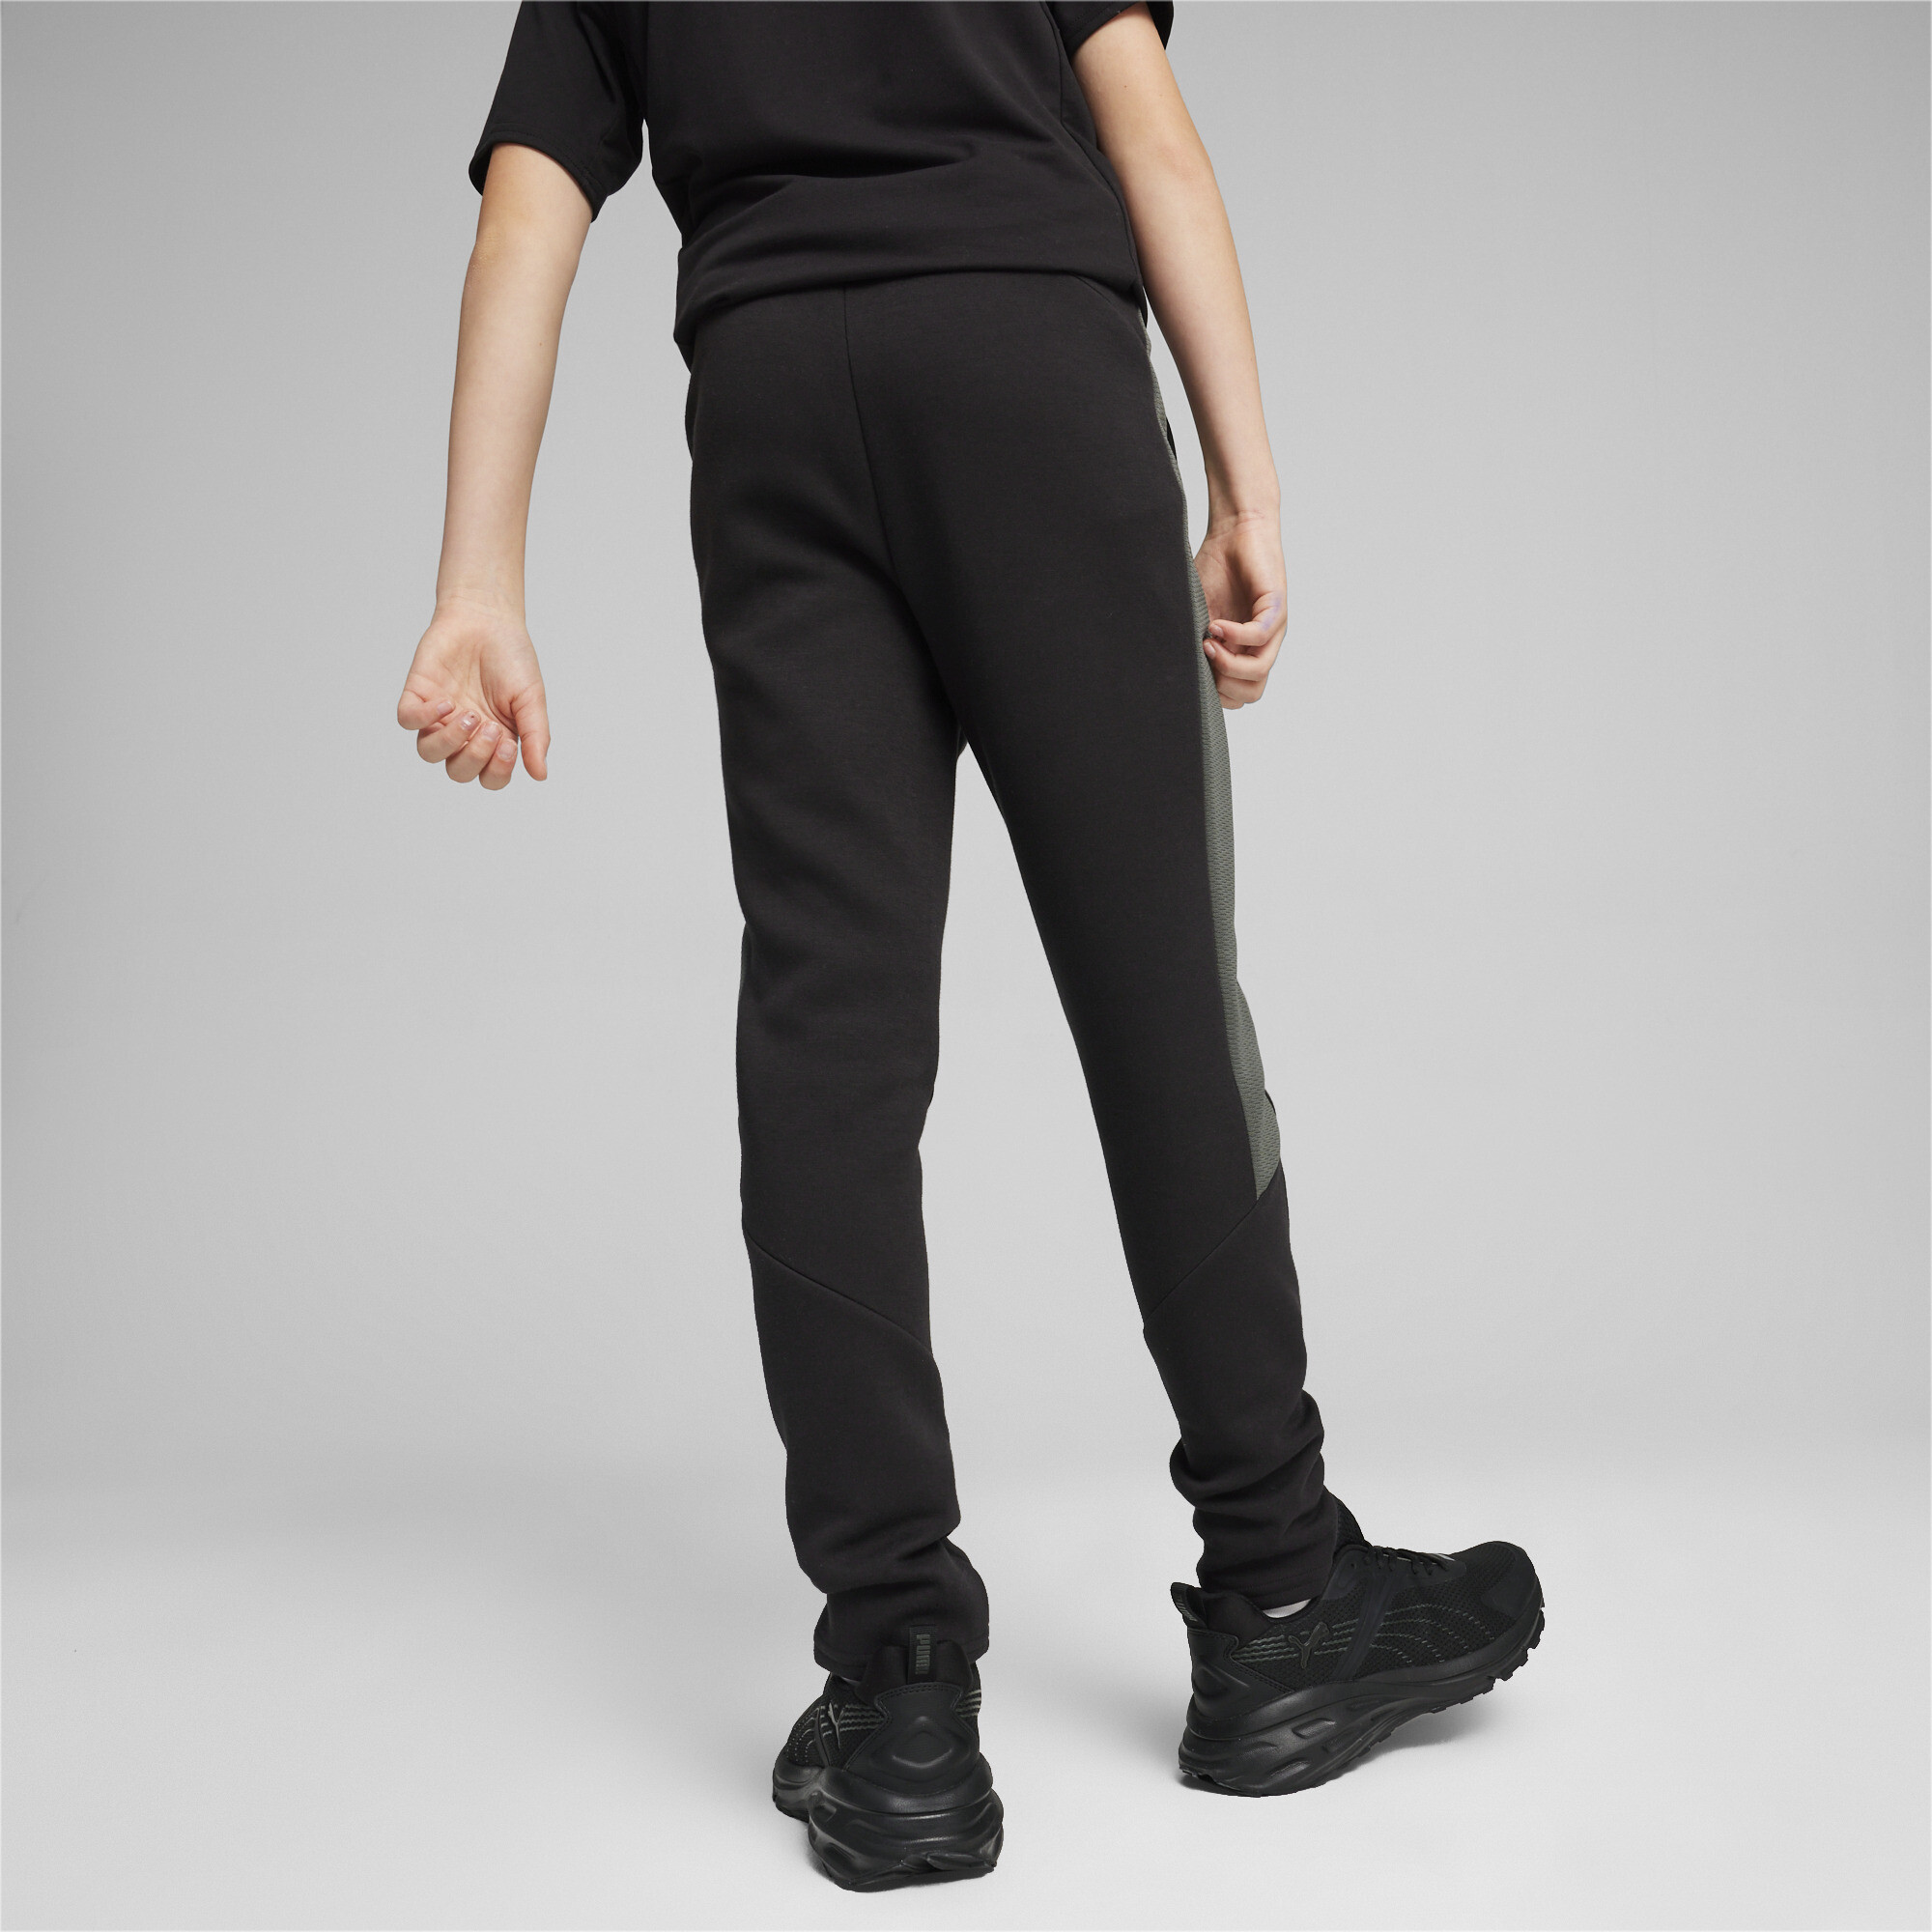 PUMA EVOSTRIPE Sweatpants In Black, Size 13-14 Youth